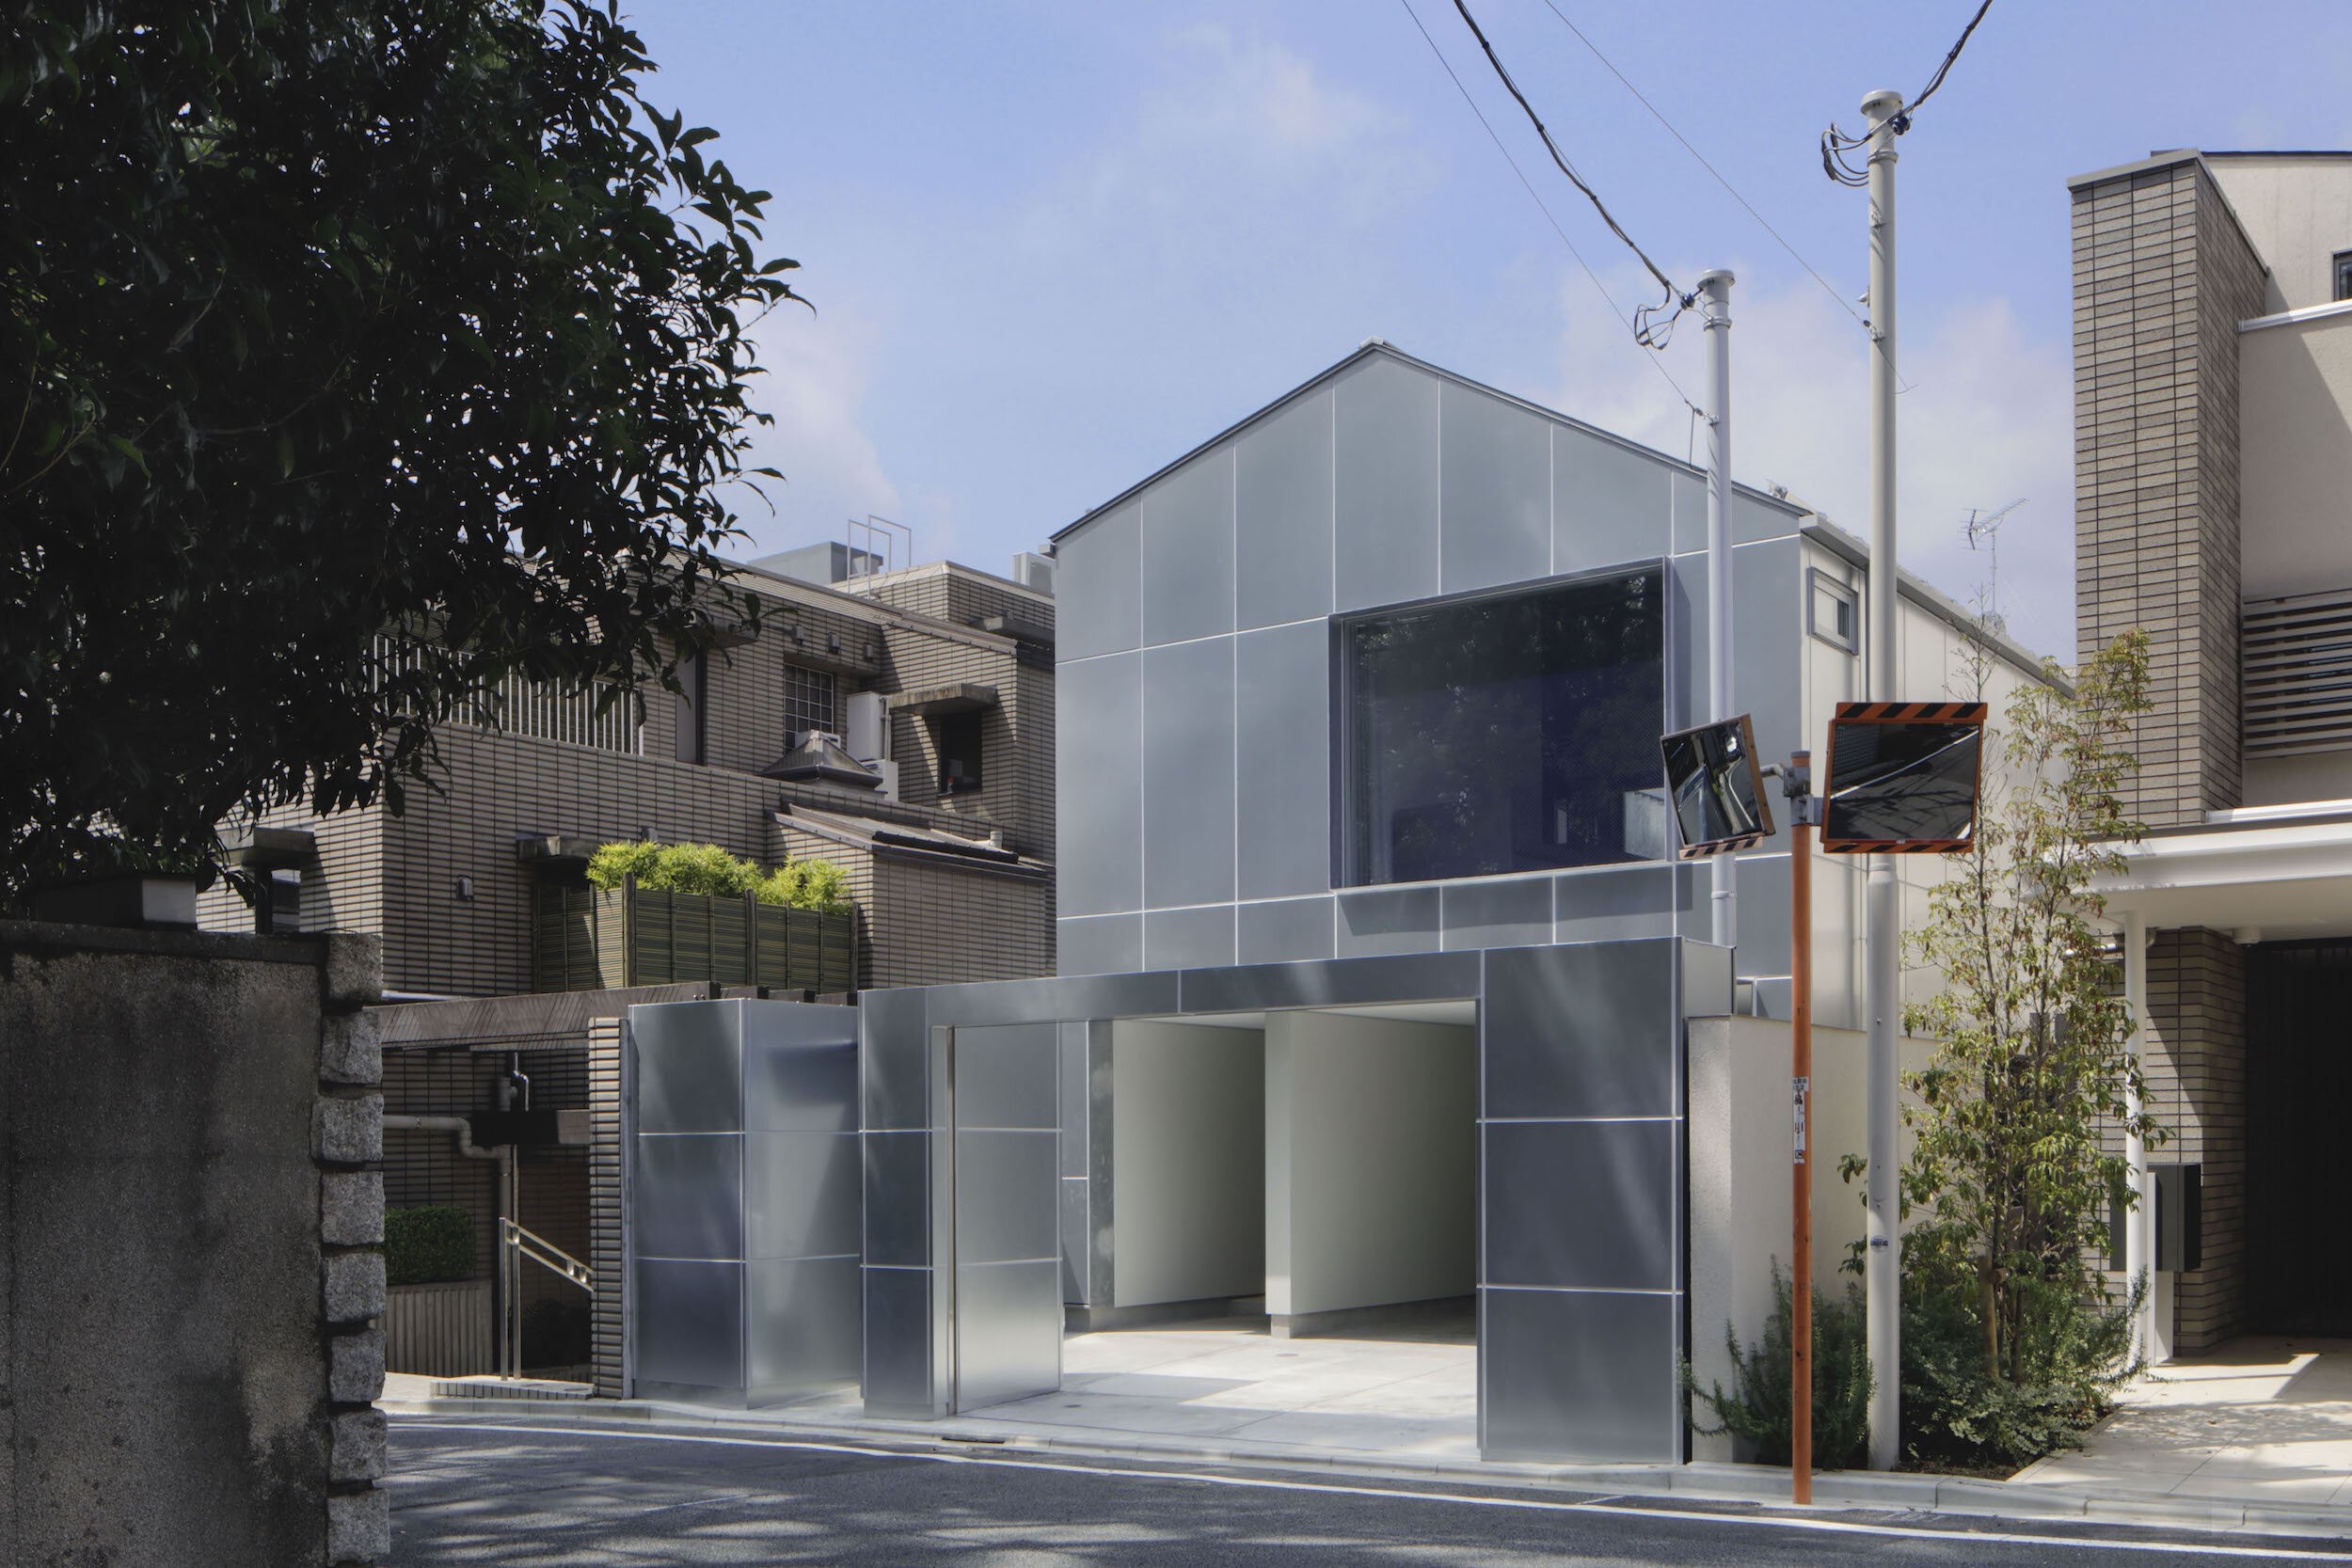  CASE-REAL（ケース・リアル）の二俣公一がデザインした住宅「東五反田の家」の全景 